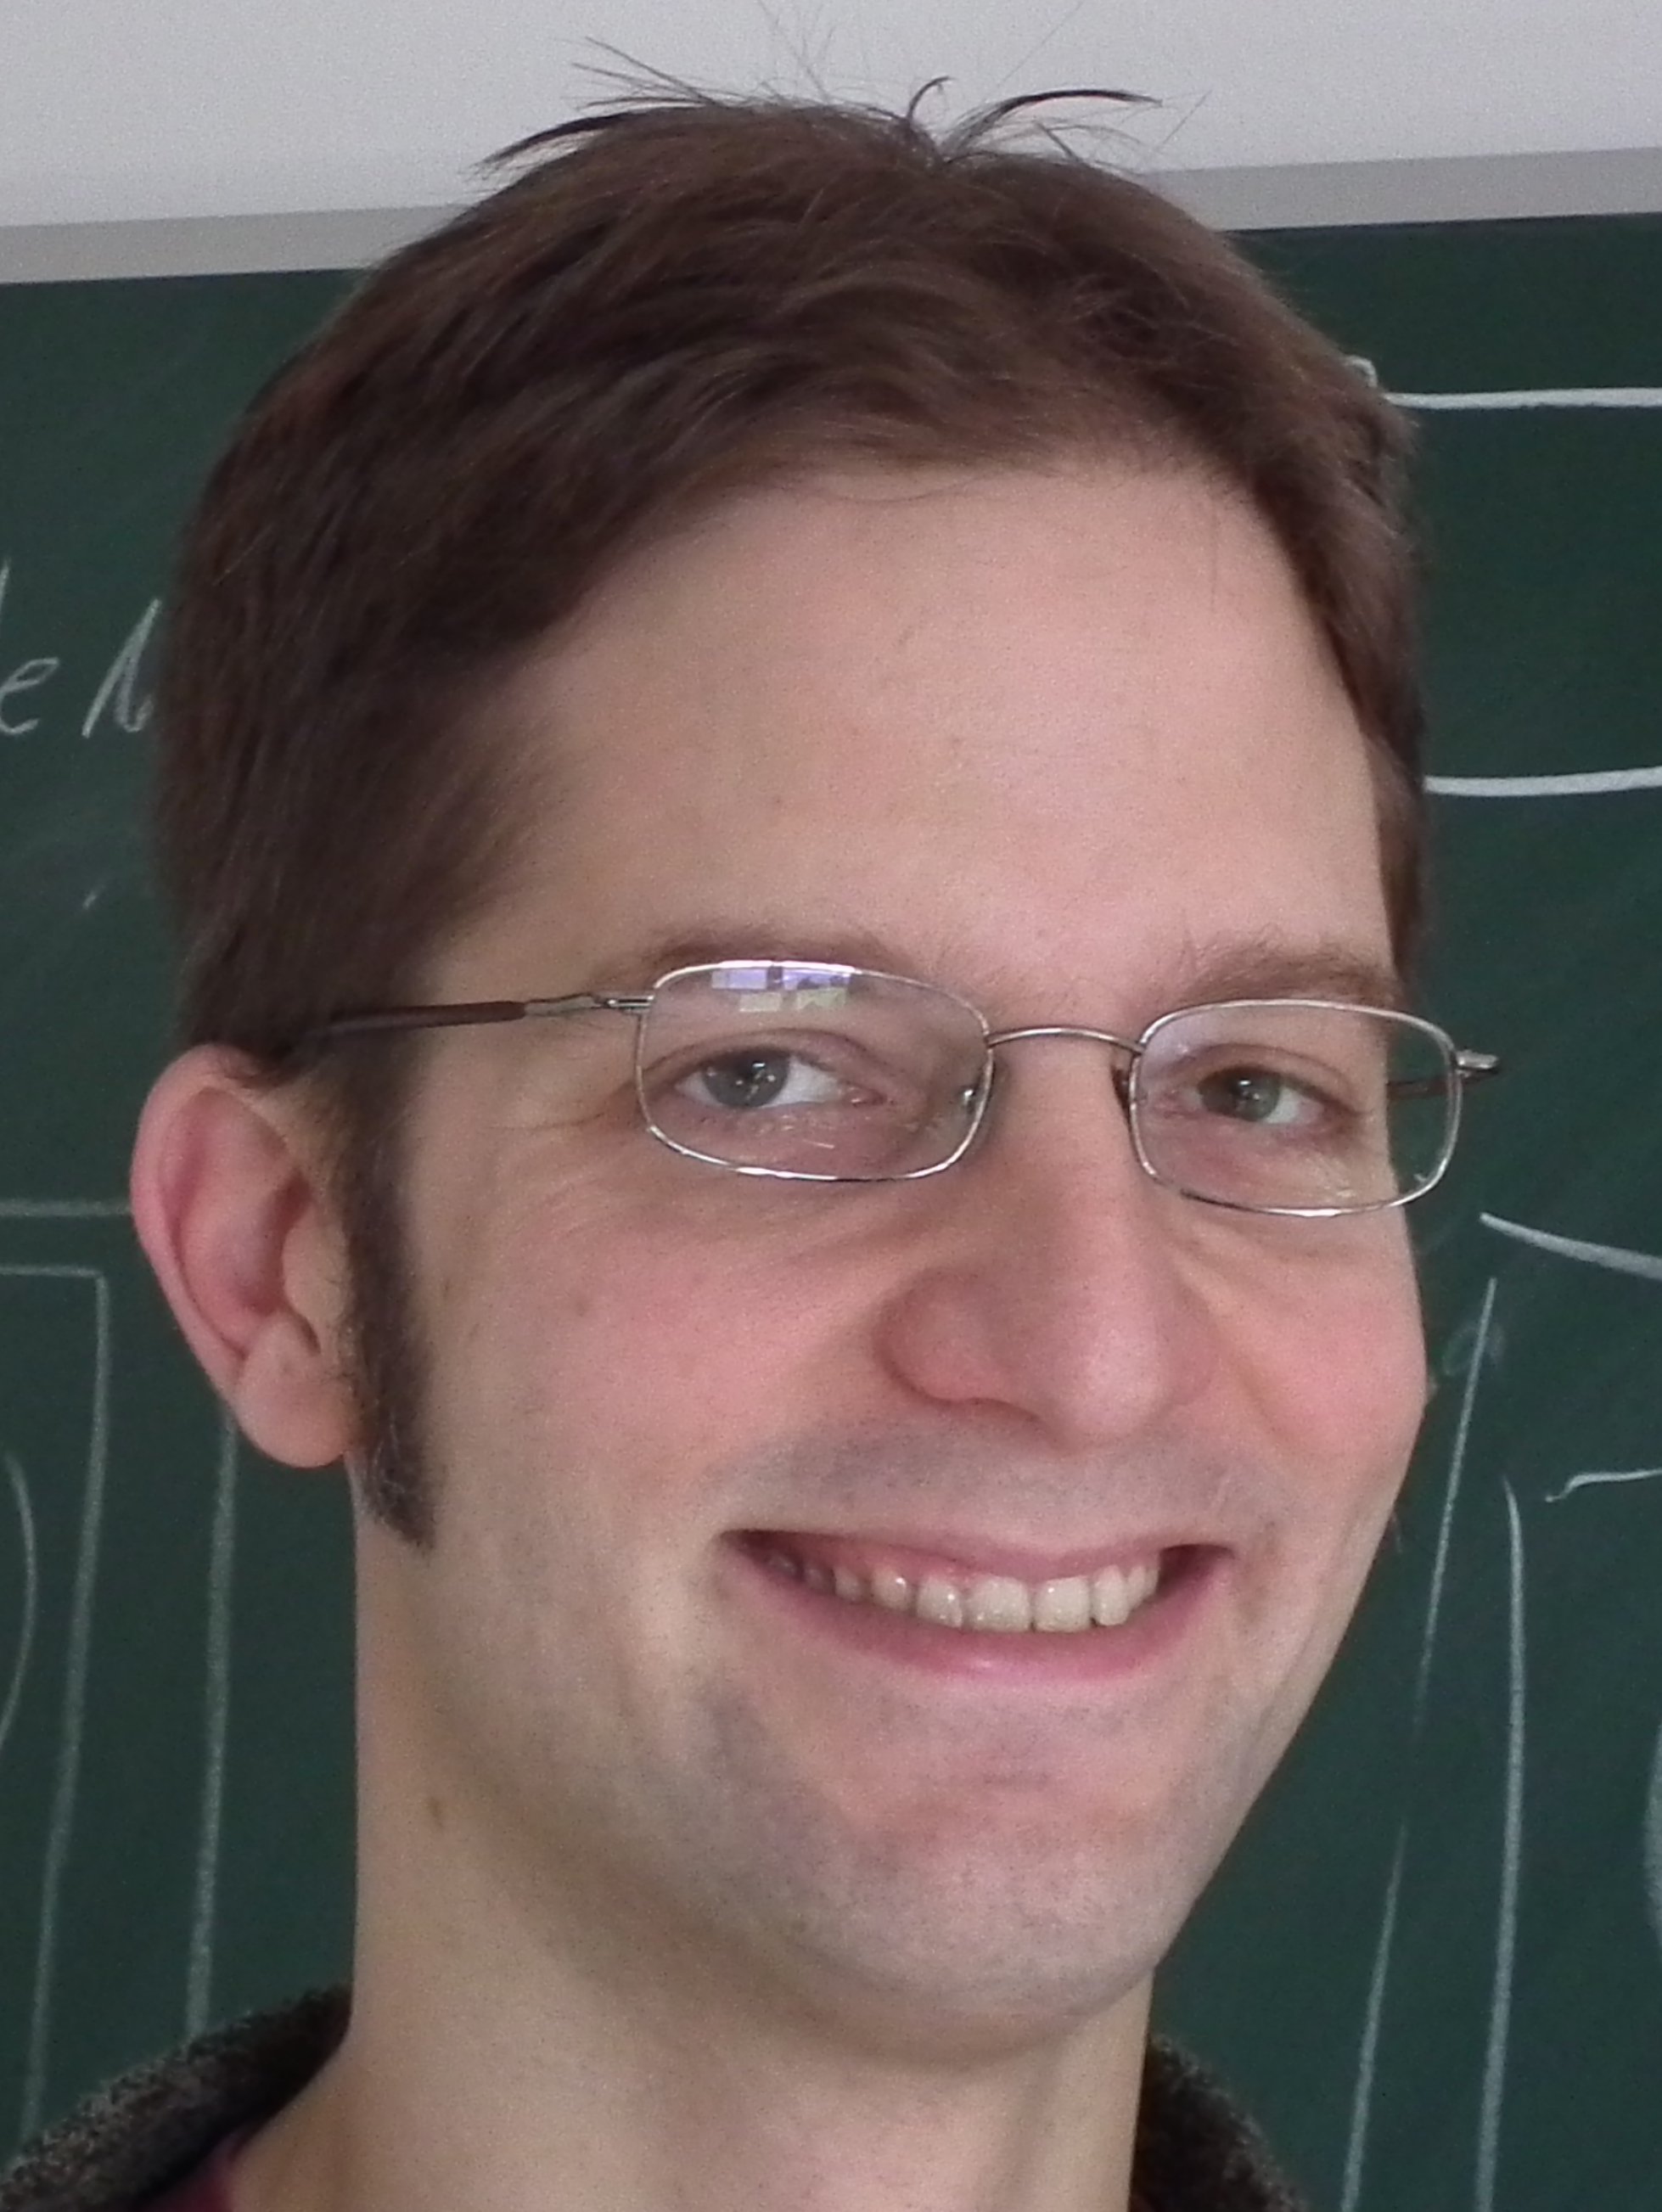 Dr. Steffen Weider